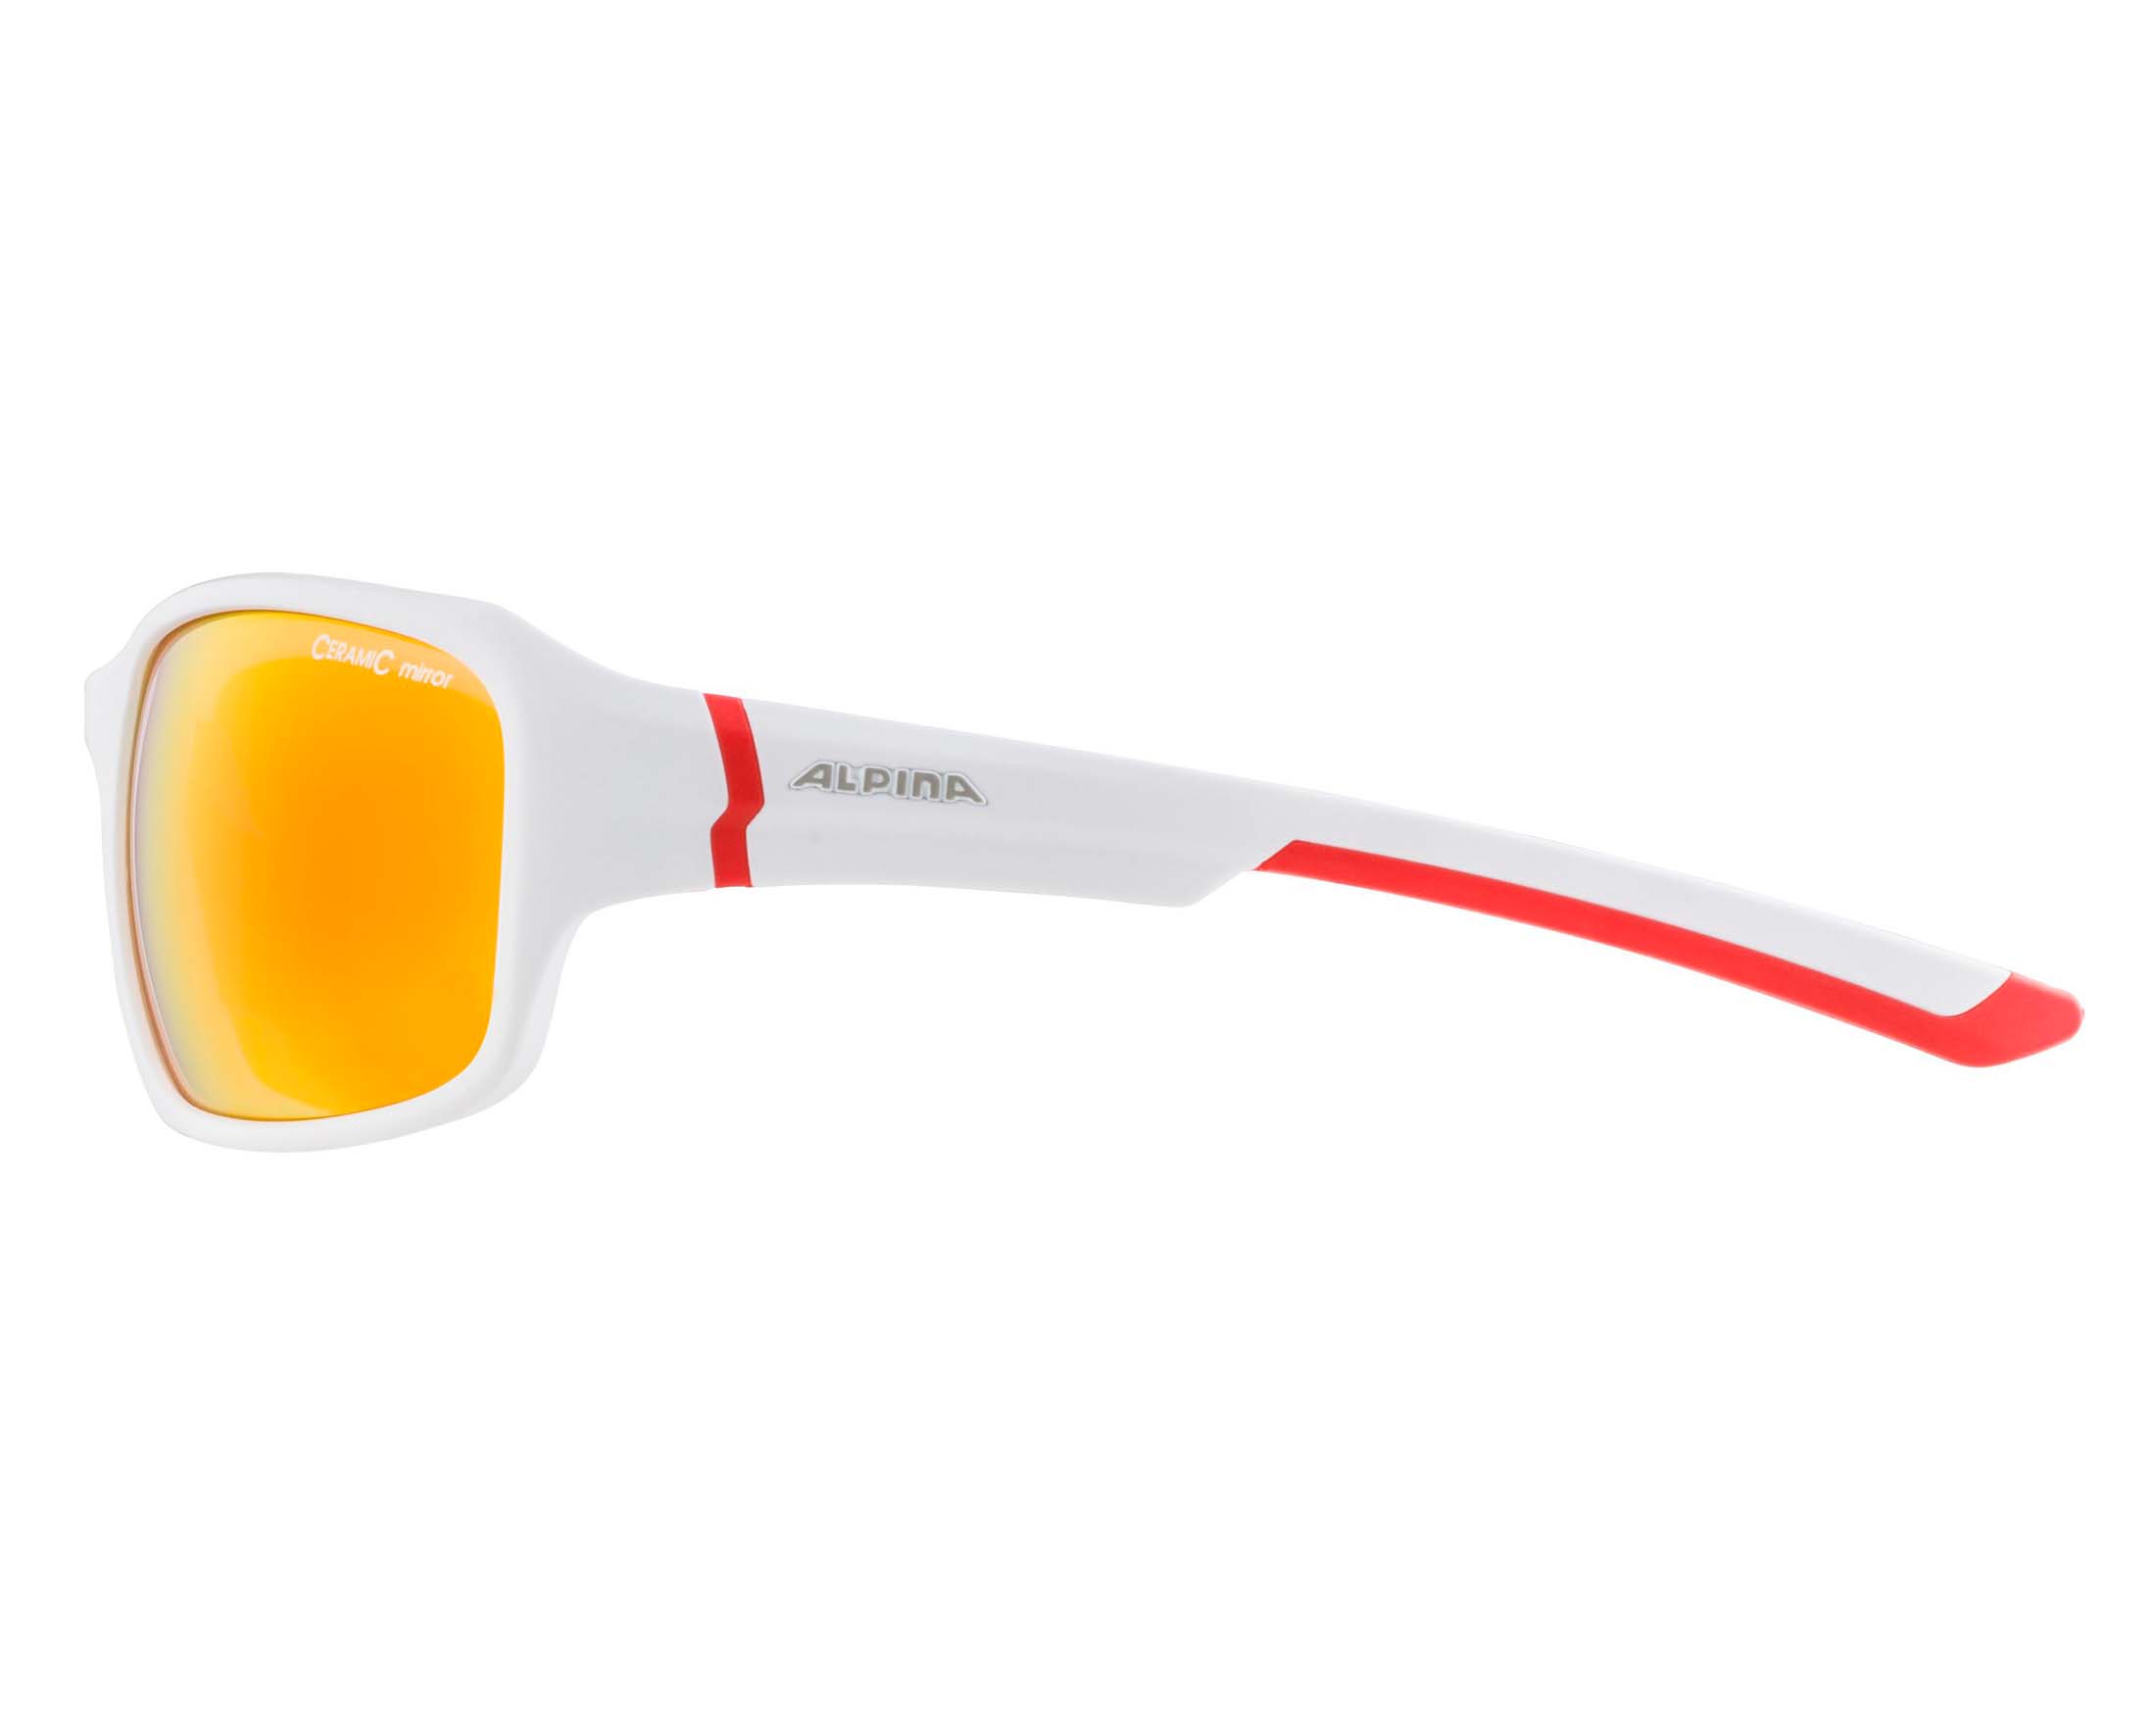 Alpina Sportbrille Radbrille Freizeit-Brille Ceramic-Material Lyron weiss rot 